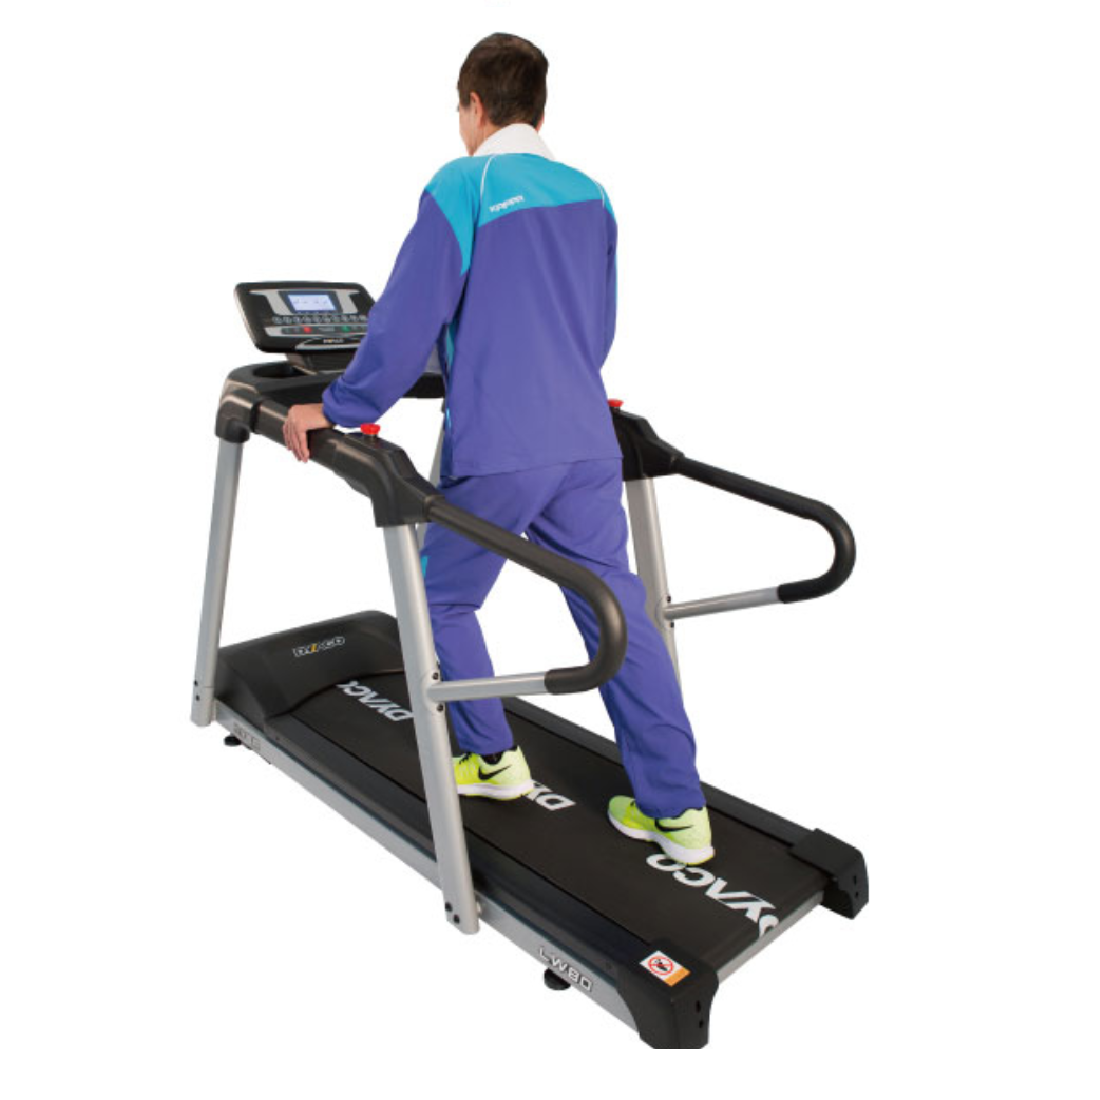 dyaco lw80 treadmill safety comfort